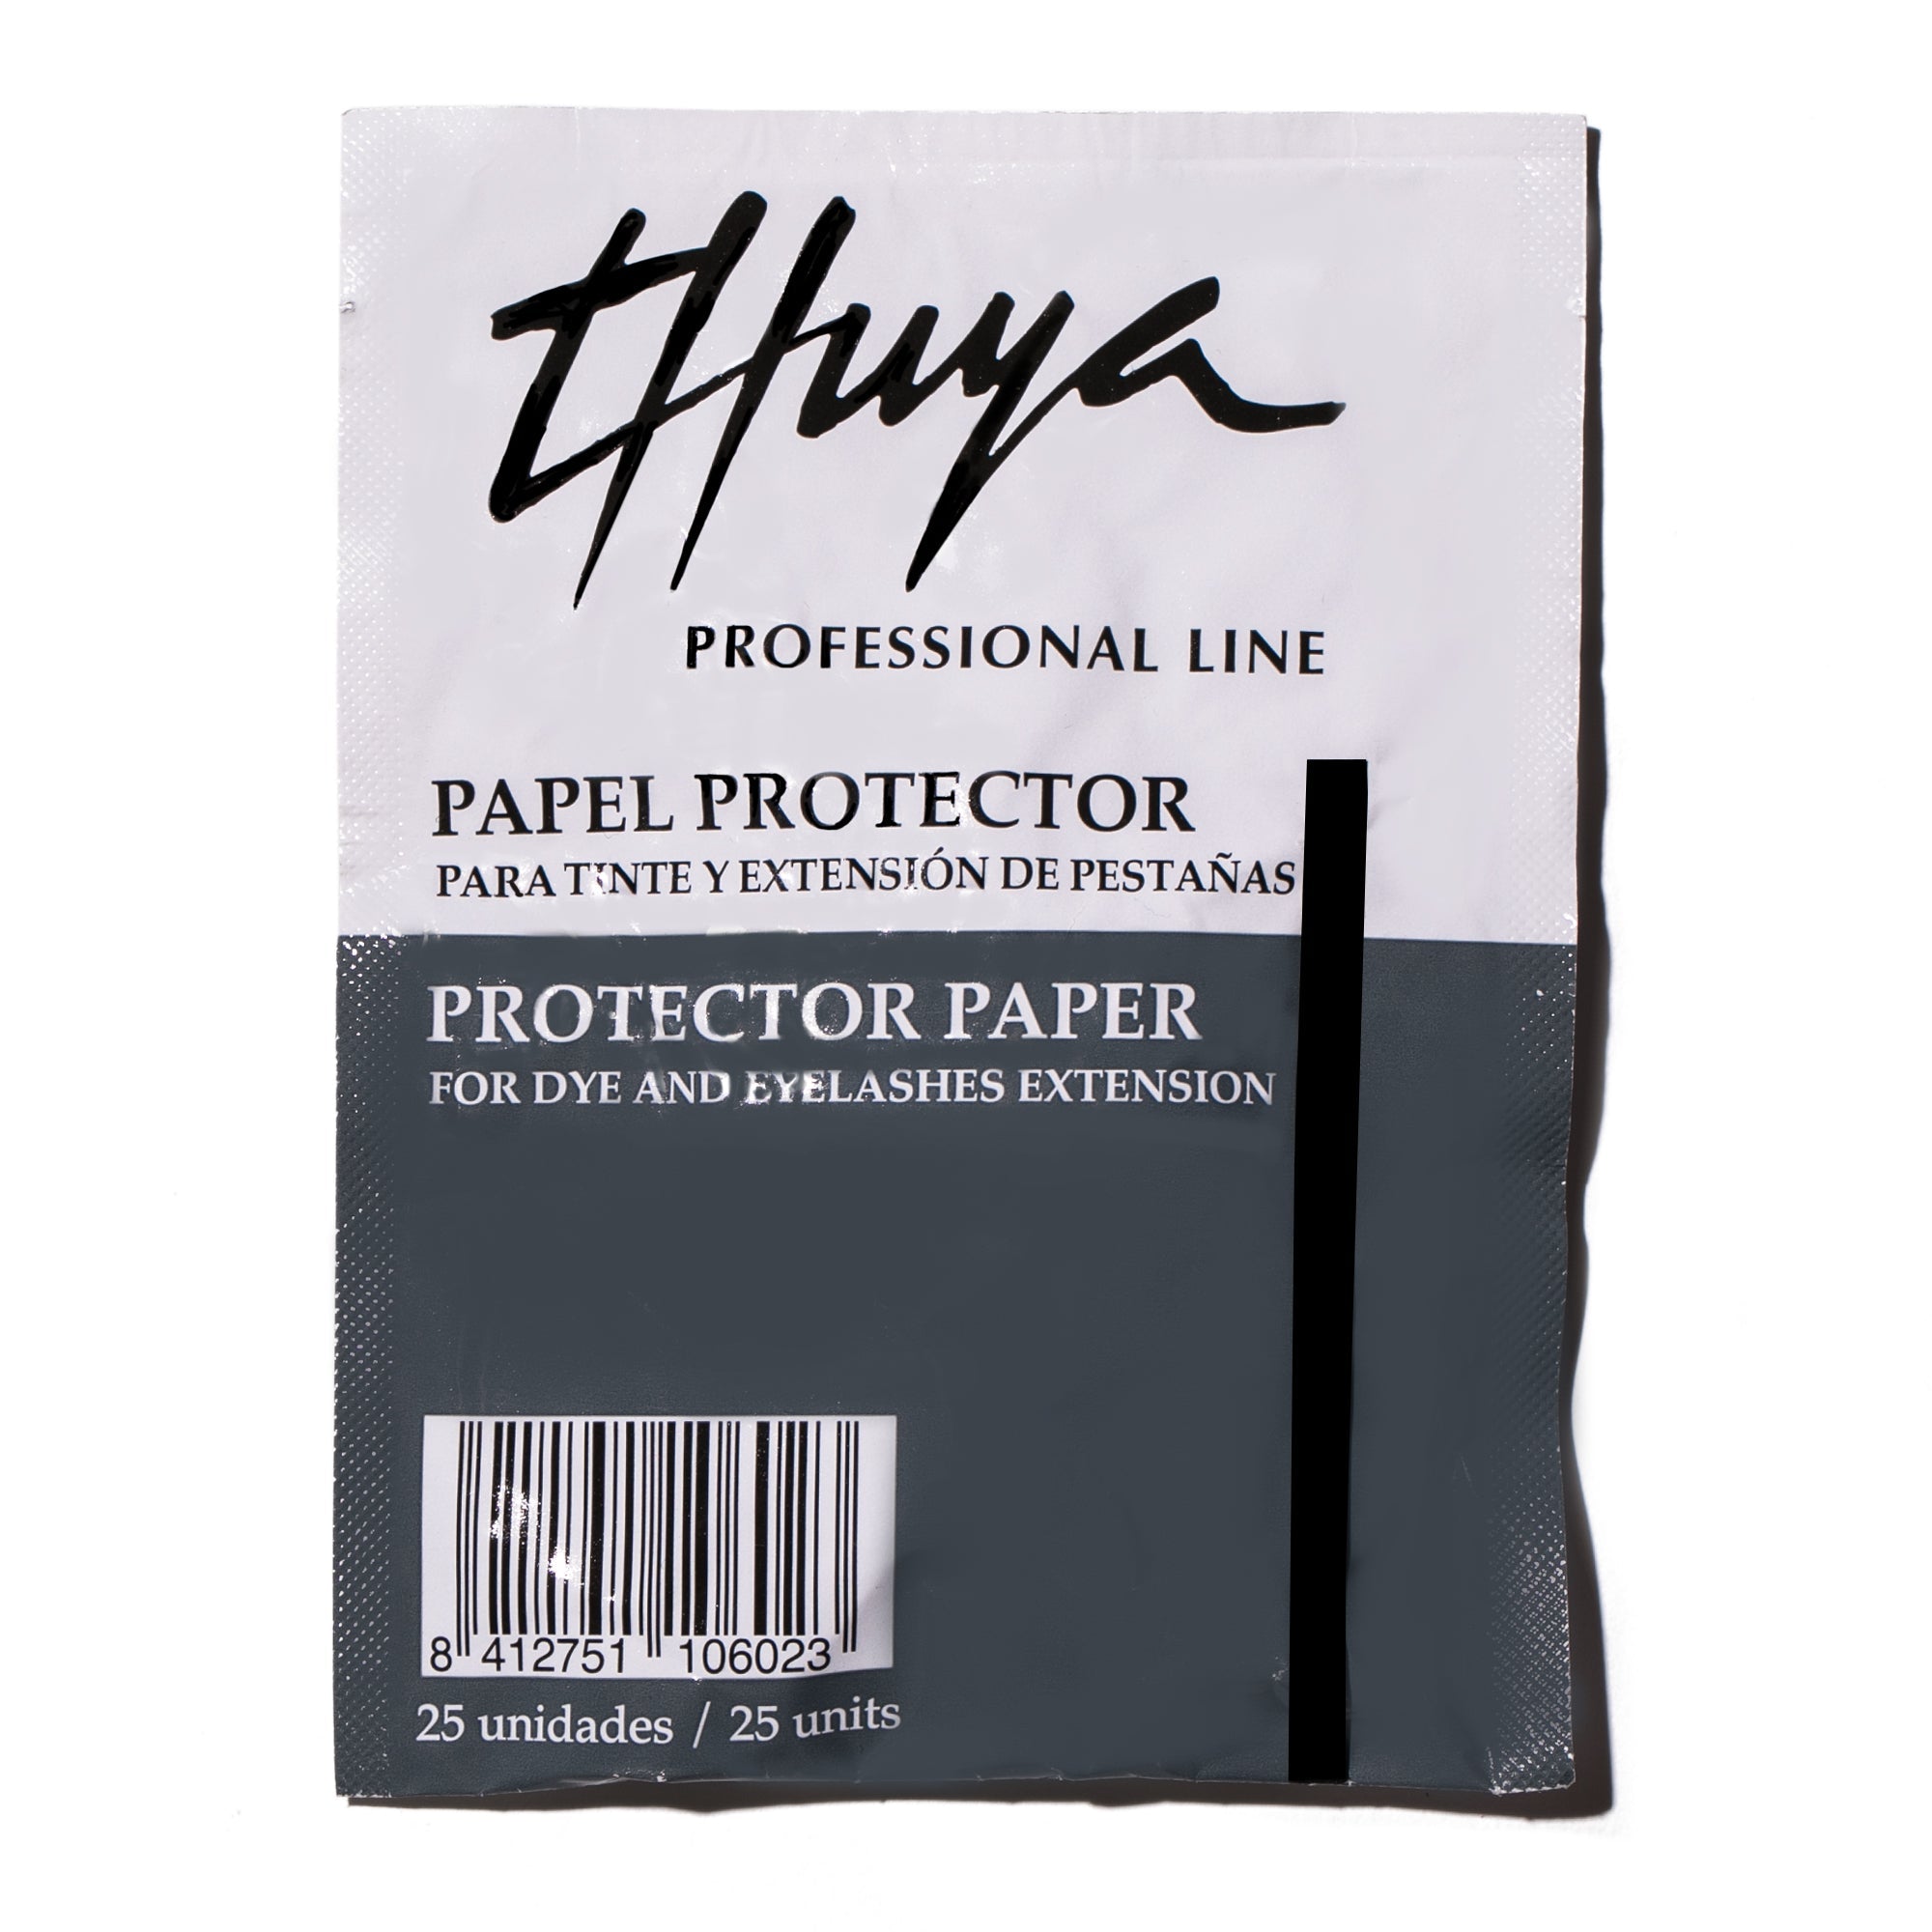 Papel Protector Extensiones y Tinte Pestañas